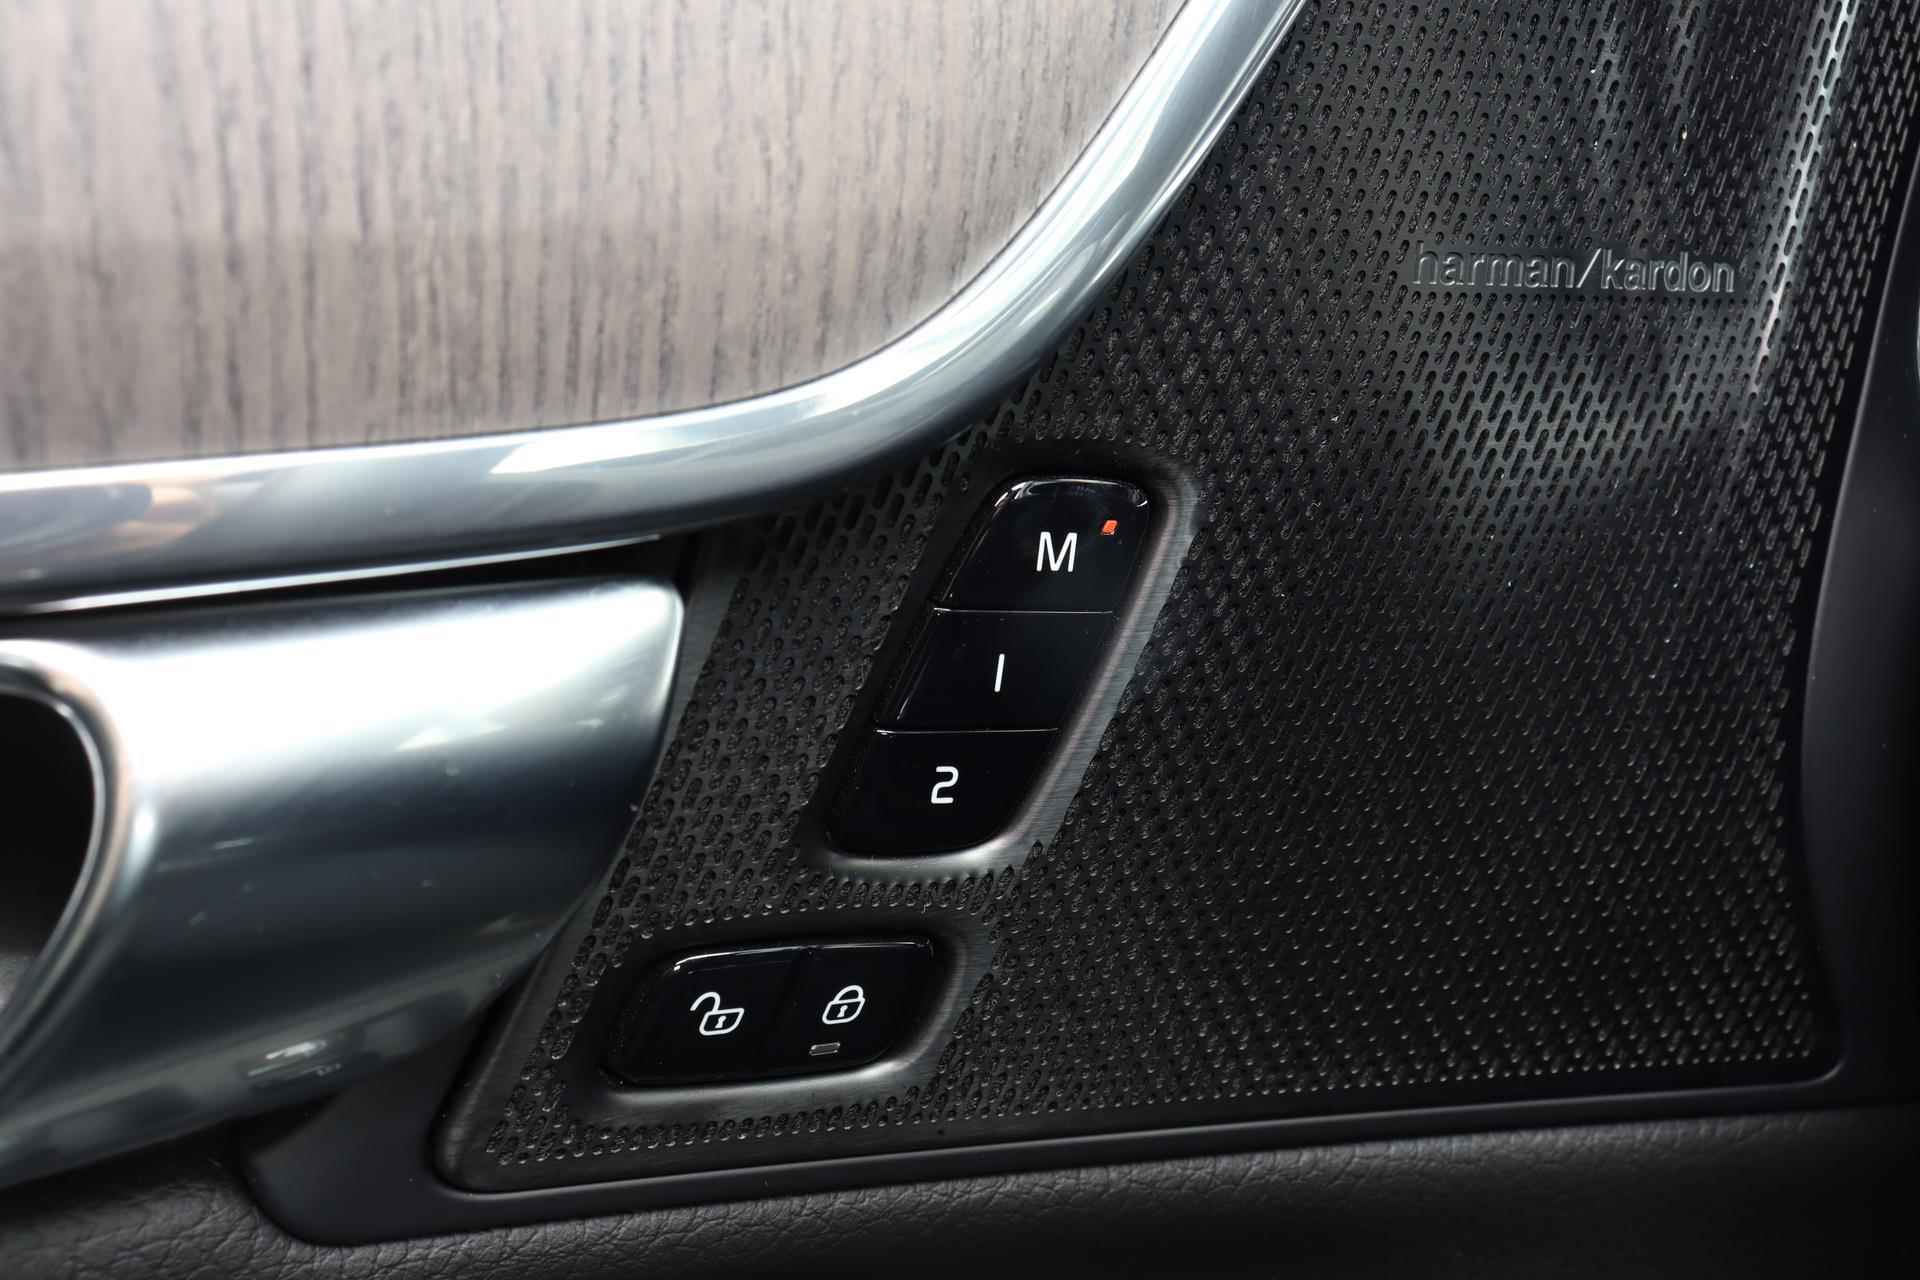 Volvo V90 T6 AWD Recharge Inscription - Panorama/schuifdak - IntelliSafe Assist & Surround - Harman/Kardon audio - Adaptieve LED koplampen - Parkeercamera achter - Verwarmde voorstoelen & stuur - Parkeersensoren voor & achter - Elektr. bedienb. voorstoelen met geheugen - Standkachel - 19' LMV - 21/33